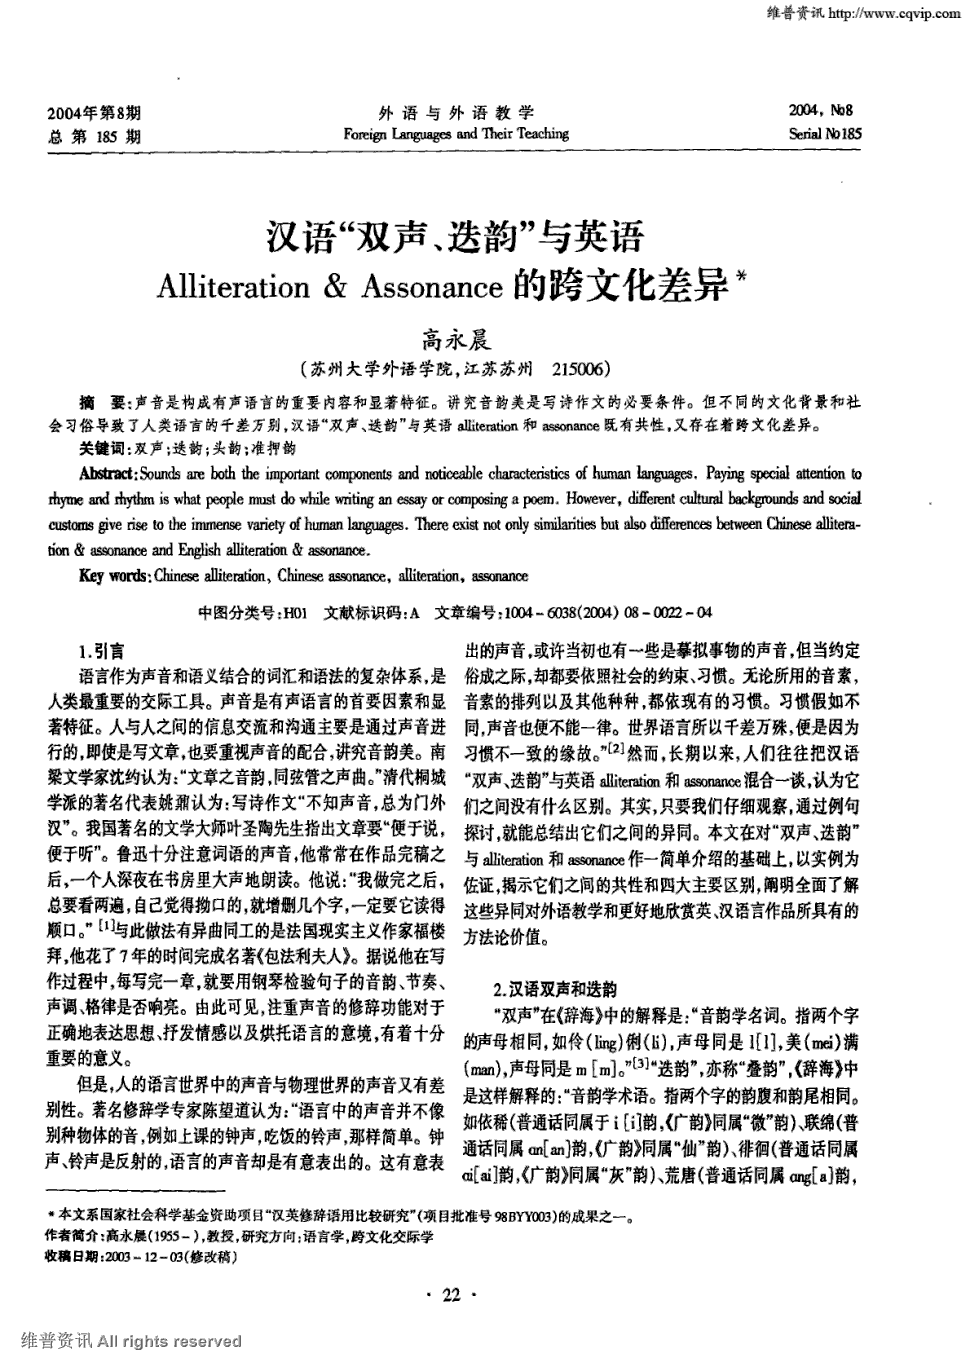 期刊汉语"双声,迭韵"与英语alliteration&assonance的跨文化差异被引